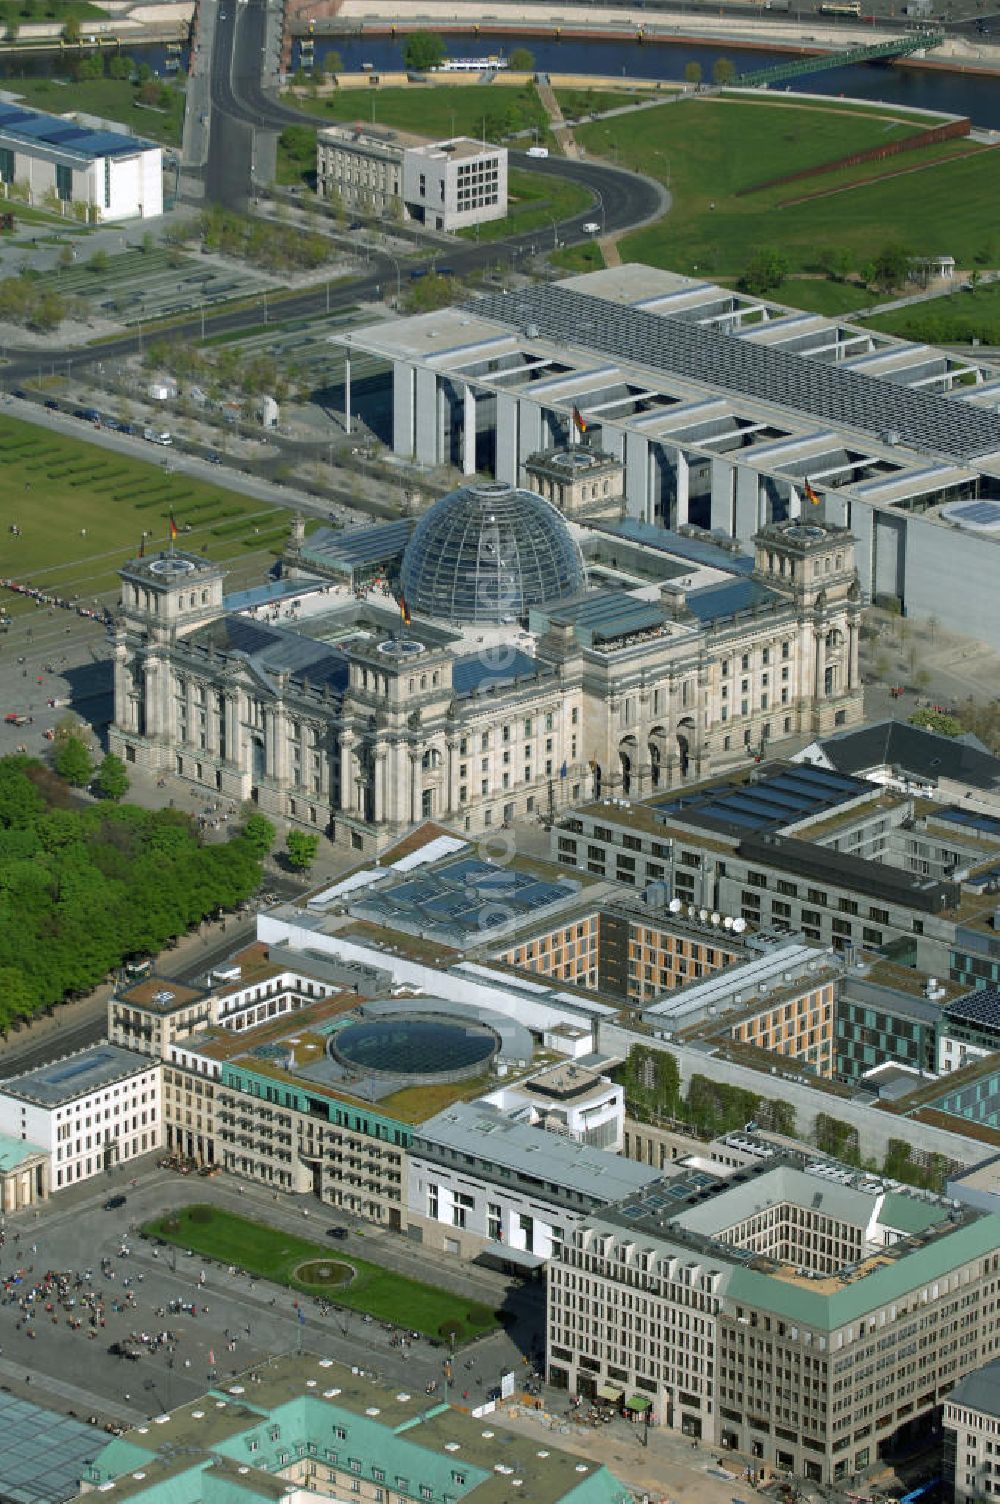 Luftaufnahme Berlin - Bereich des Pariser Platz am Brandenburger Tor in Berlin-Mitte